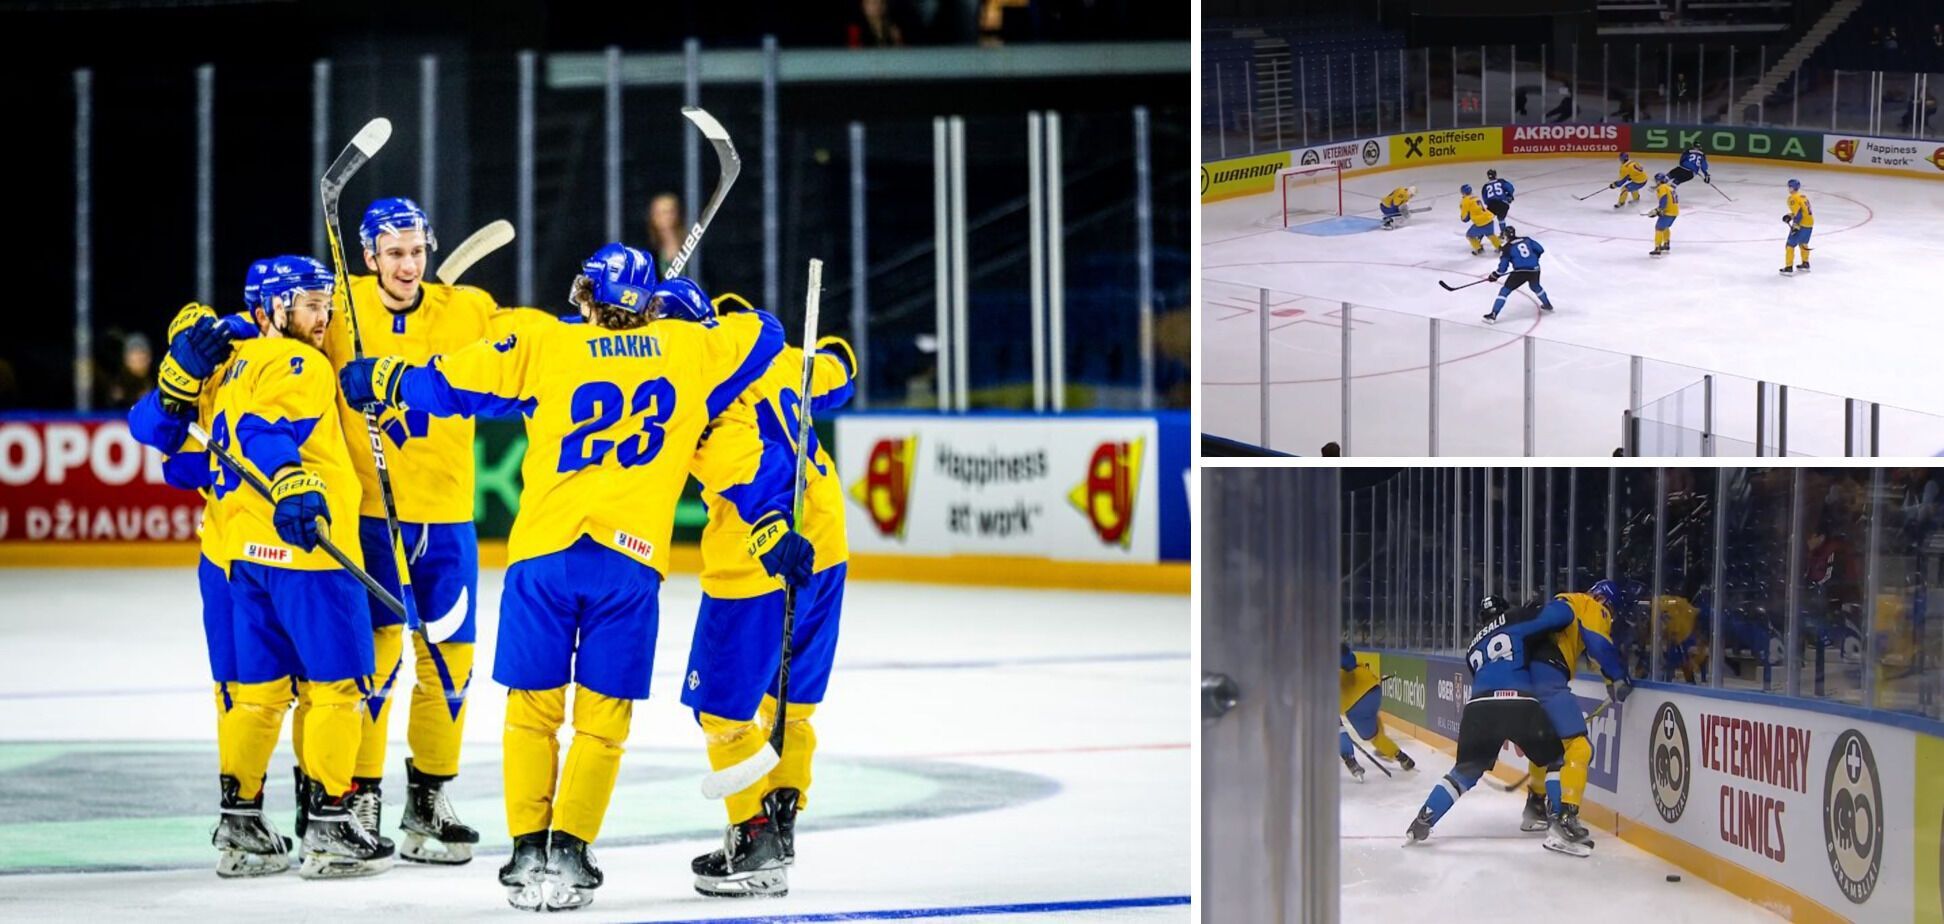 Ukraina odniosła drugie zwycięstwo na Mistrzostwach Świata w hokeju na lodzie. Wideo